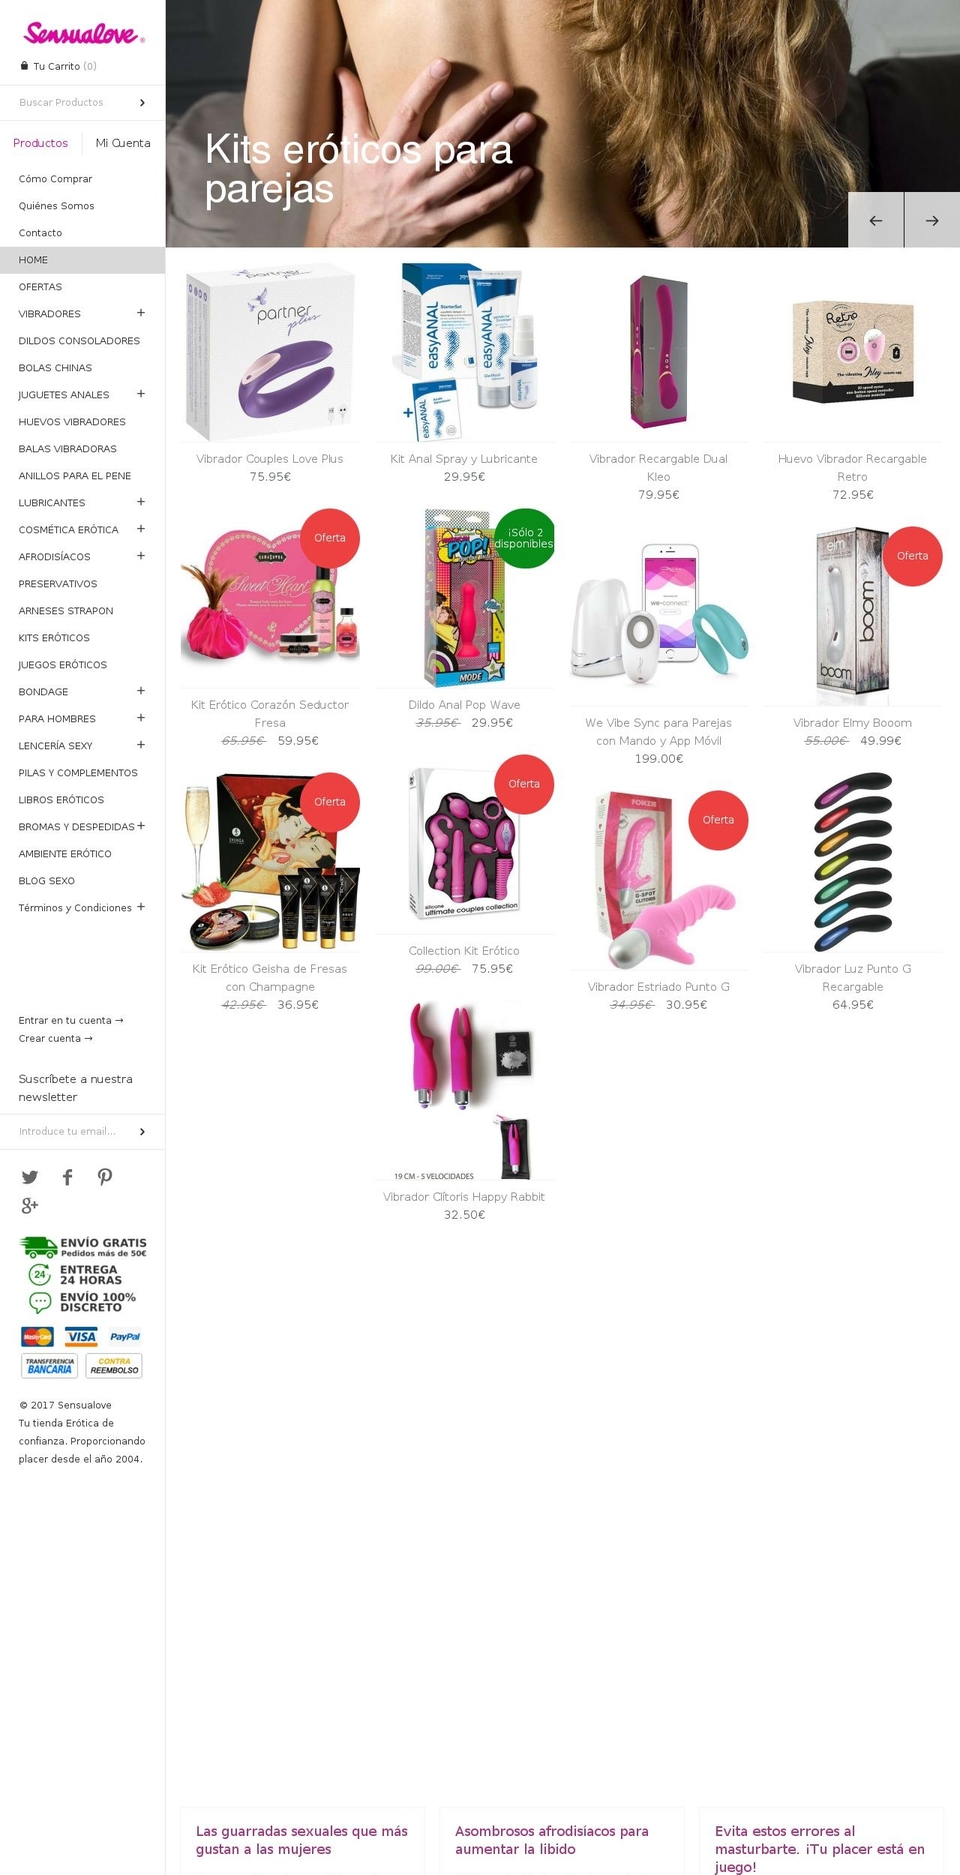 sensualove.com shopify website screenshot